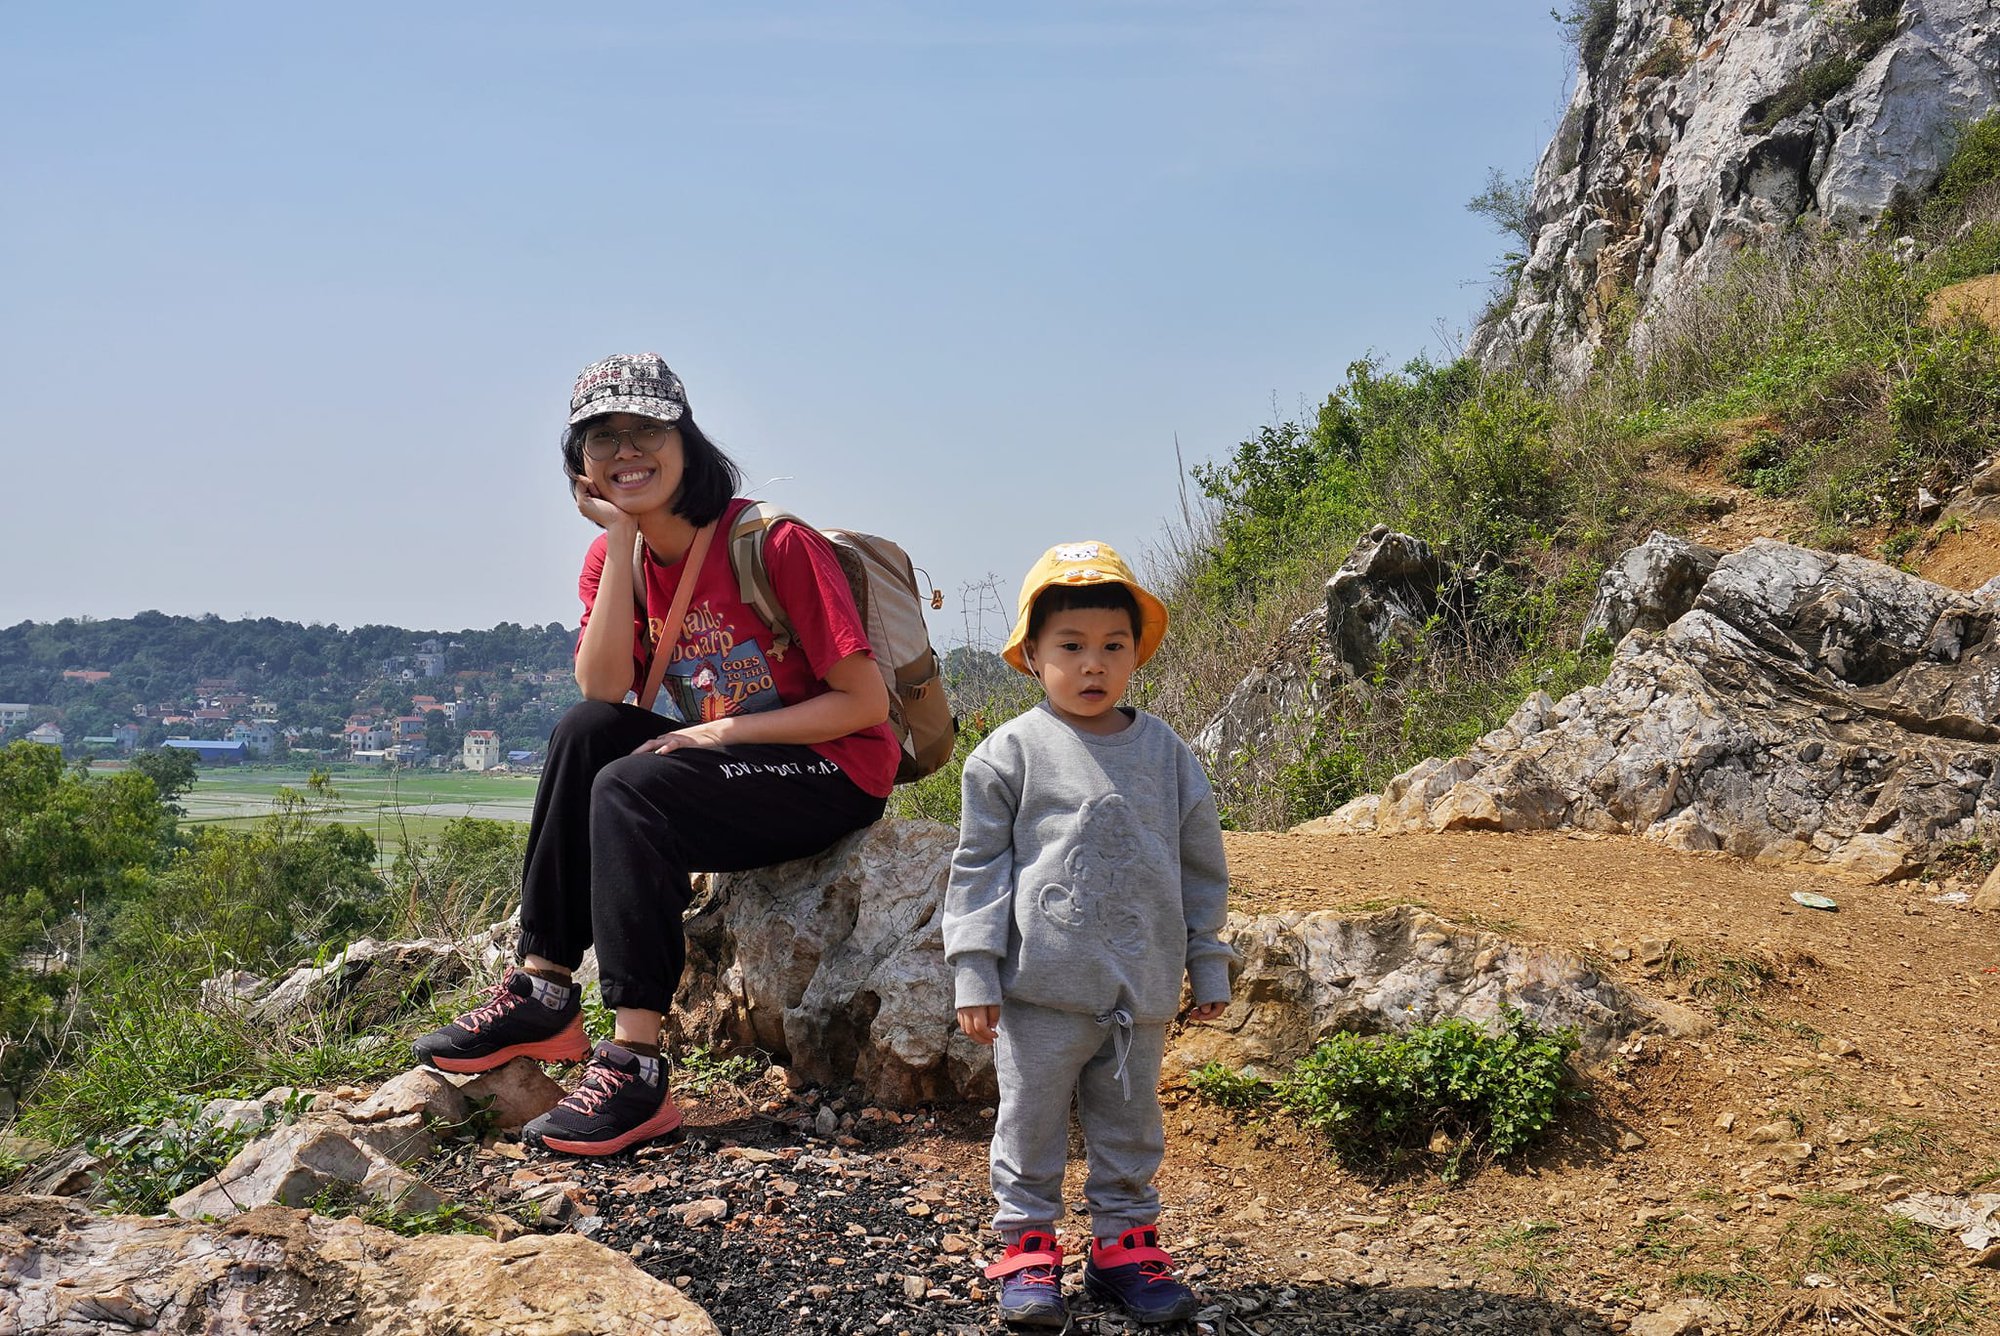 Chuyến leo núi đầy niềm vui và thử thách của gia đình nhỏ cùng 6 quy tắc cần nhớ để giữ an toàn cho con  - Ảnh 2.